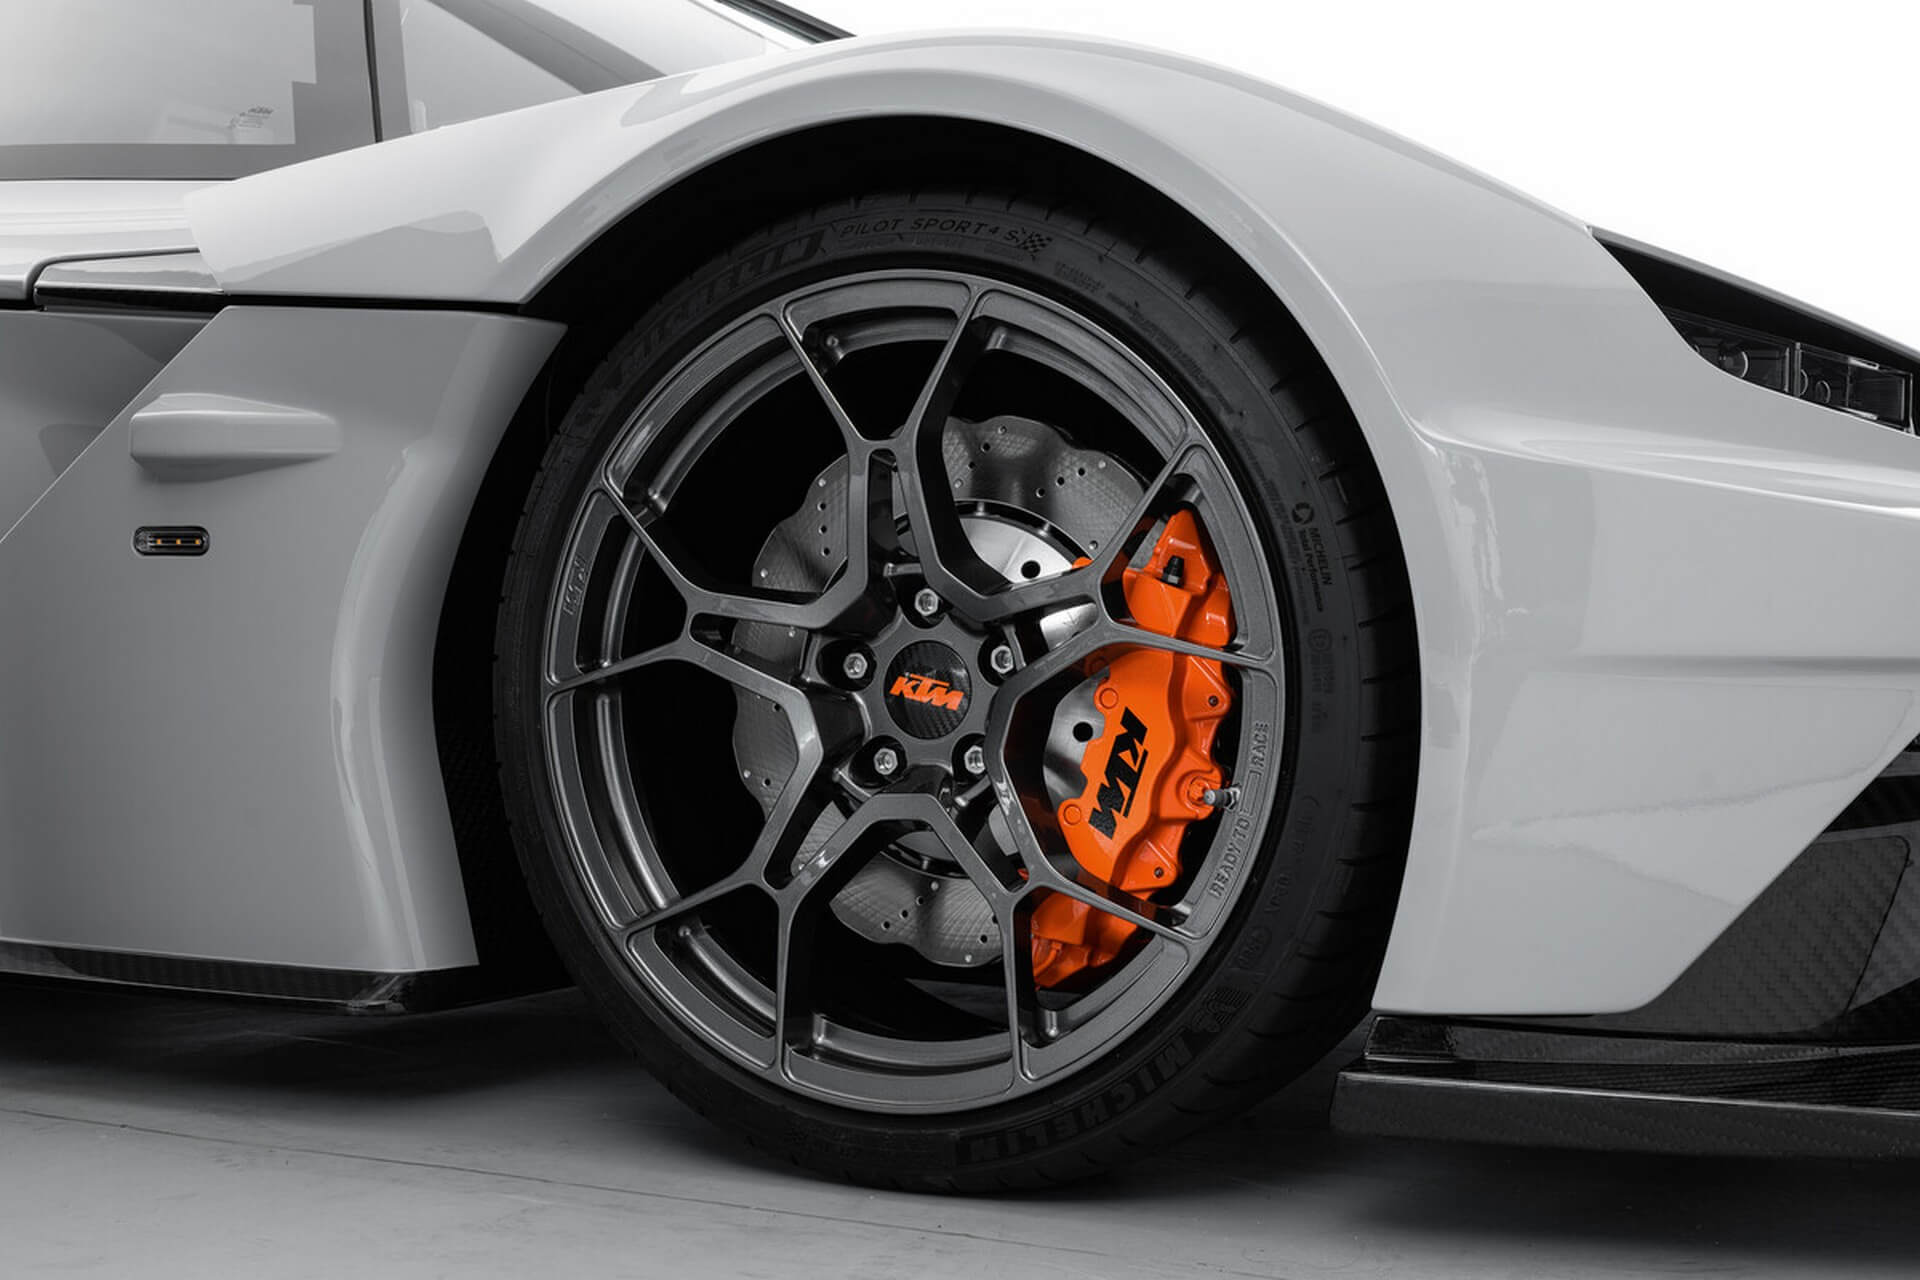 KTM X-Bow GT-XR pormenor jantes e discos de travão